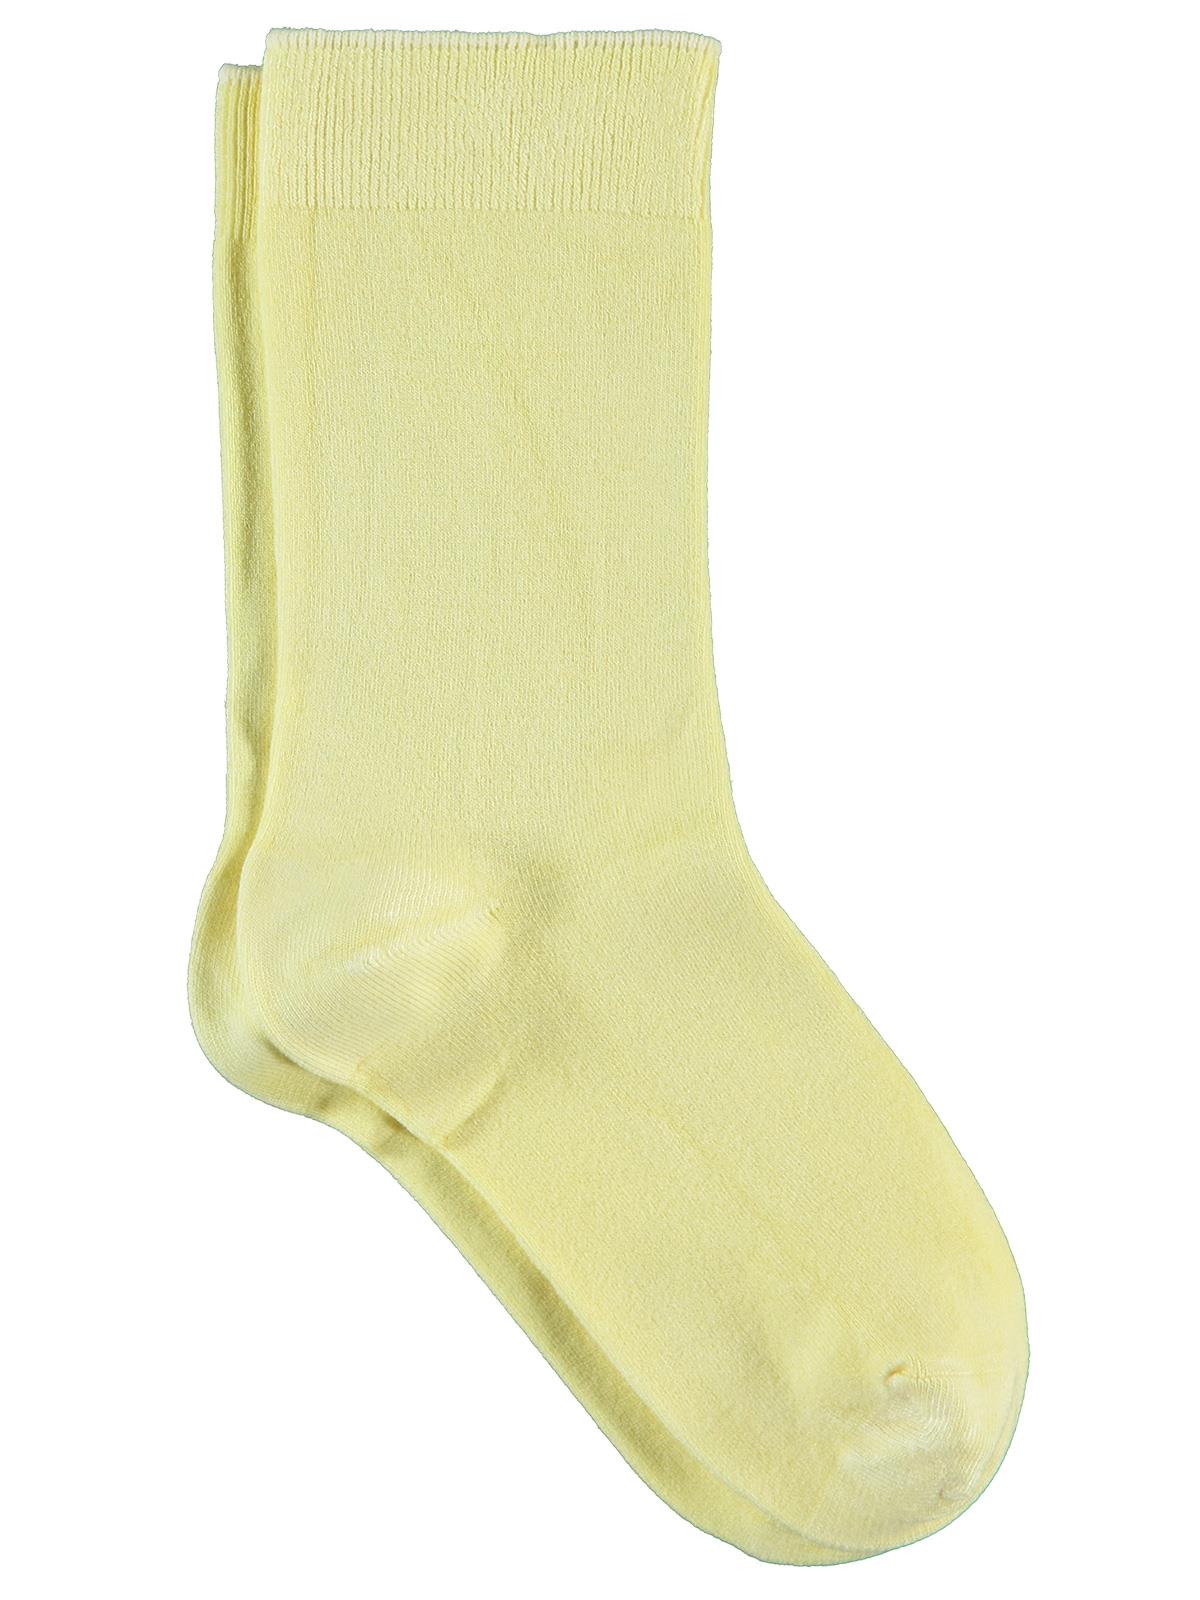 Bella Calze Kız Çocuk Bambu Soket Çorap 36-40 Numara Sarı